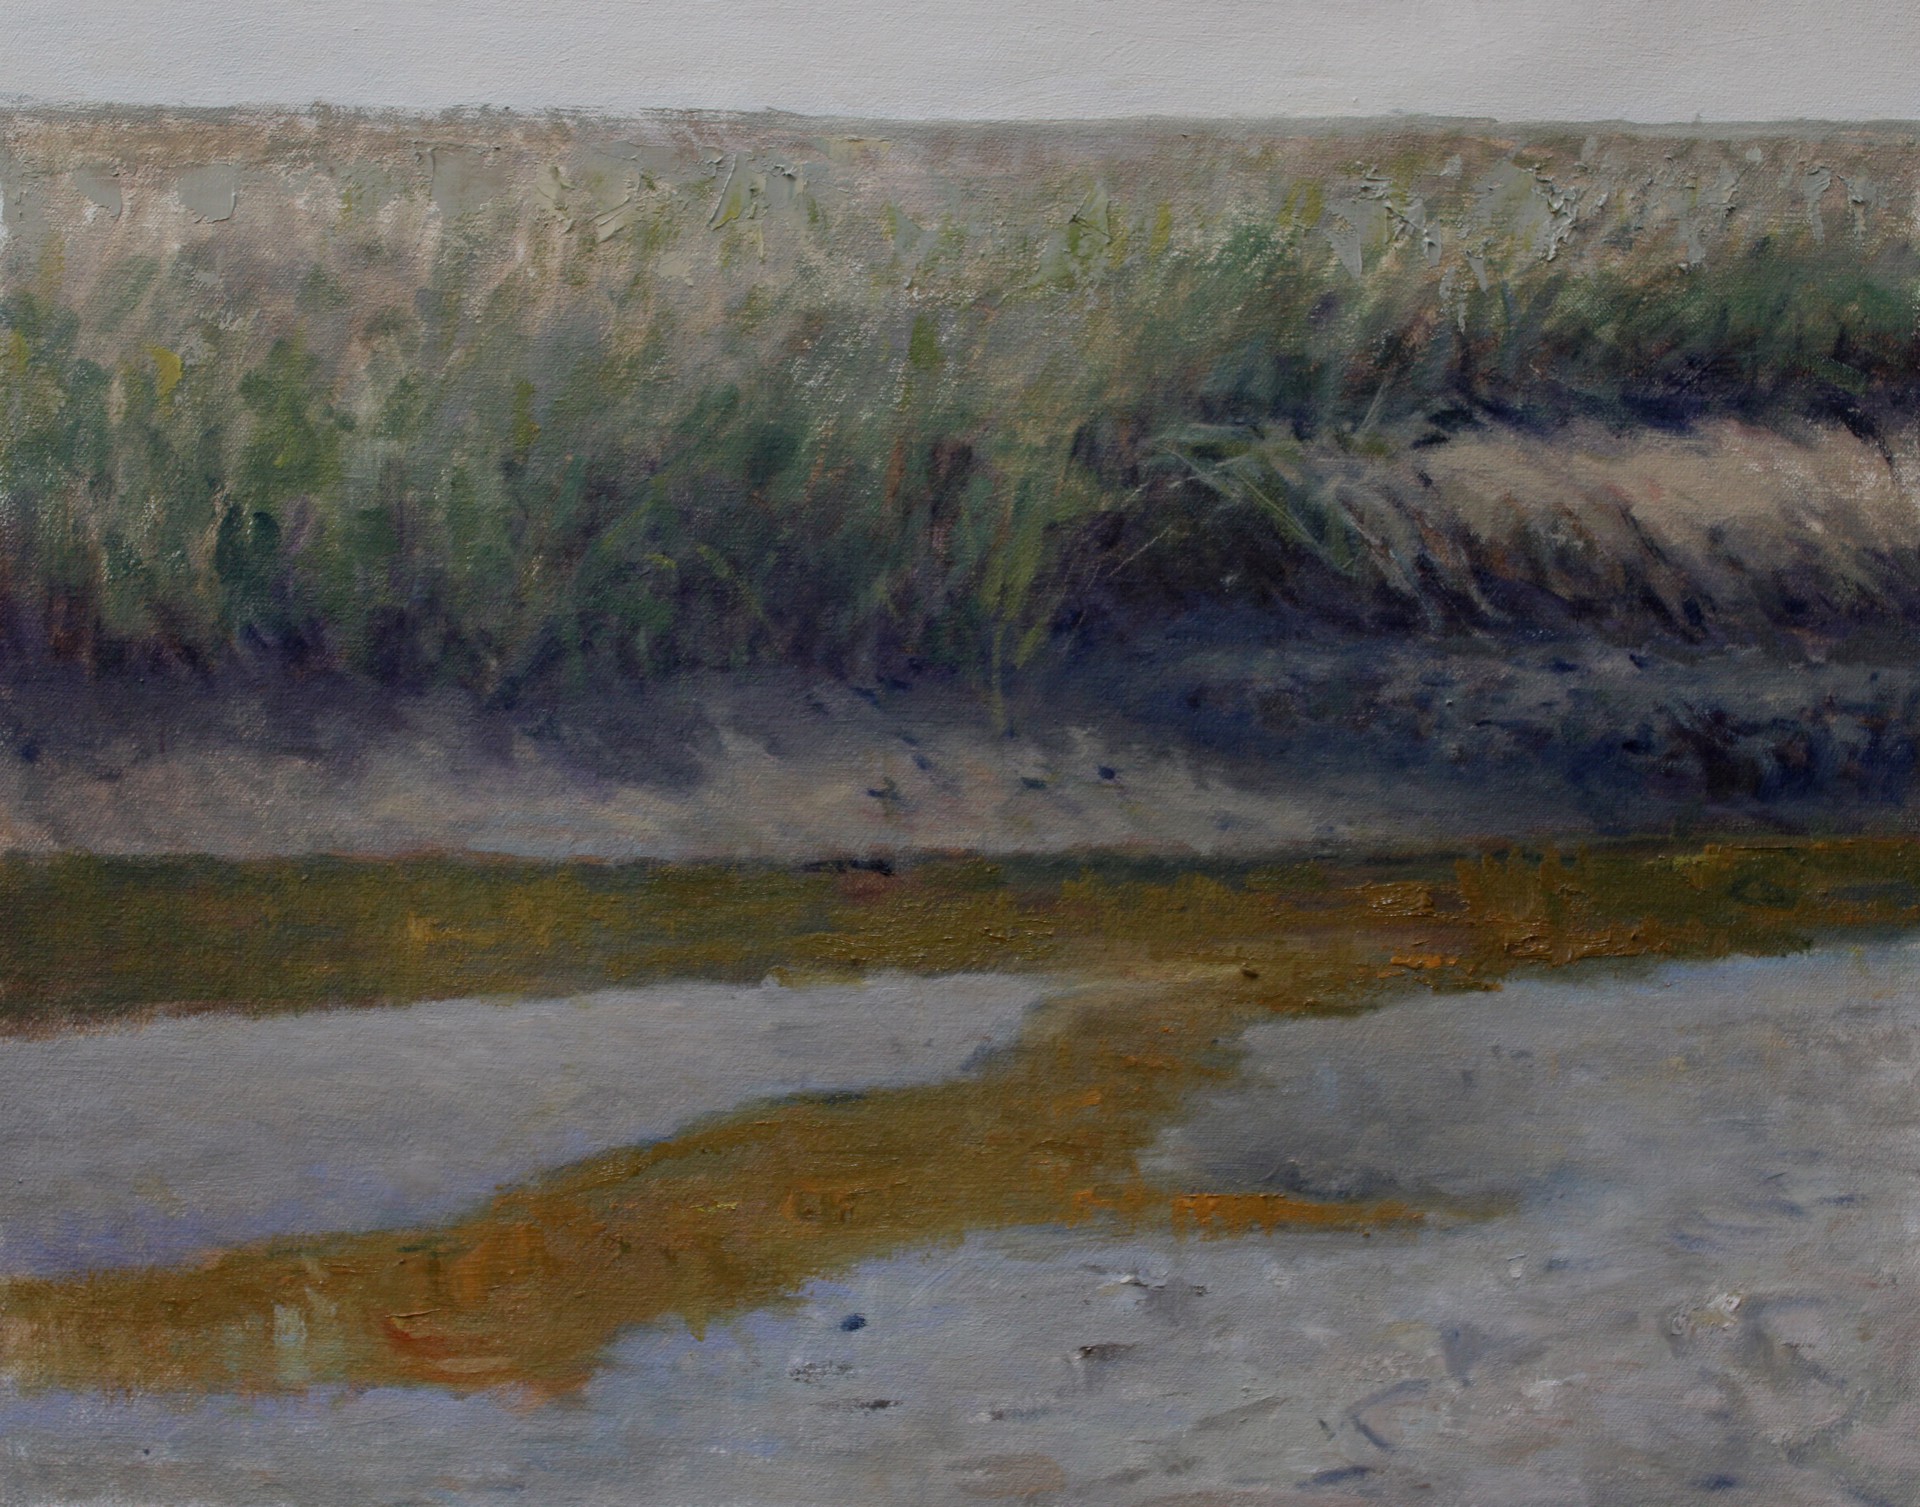 Salt Marsh in June by John Stanford